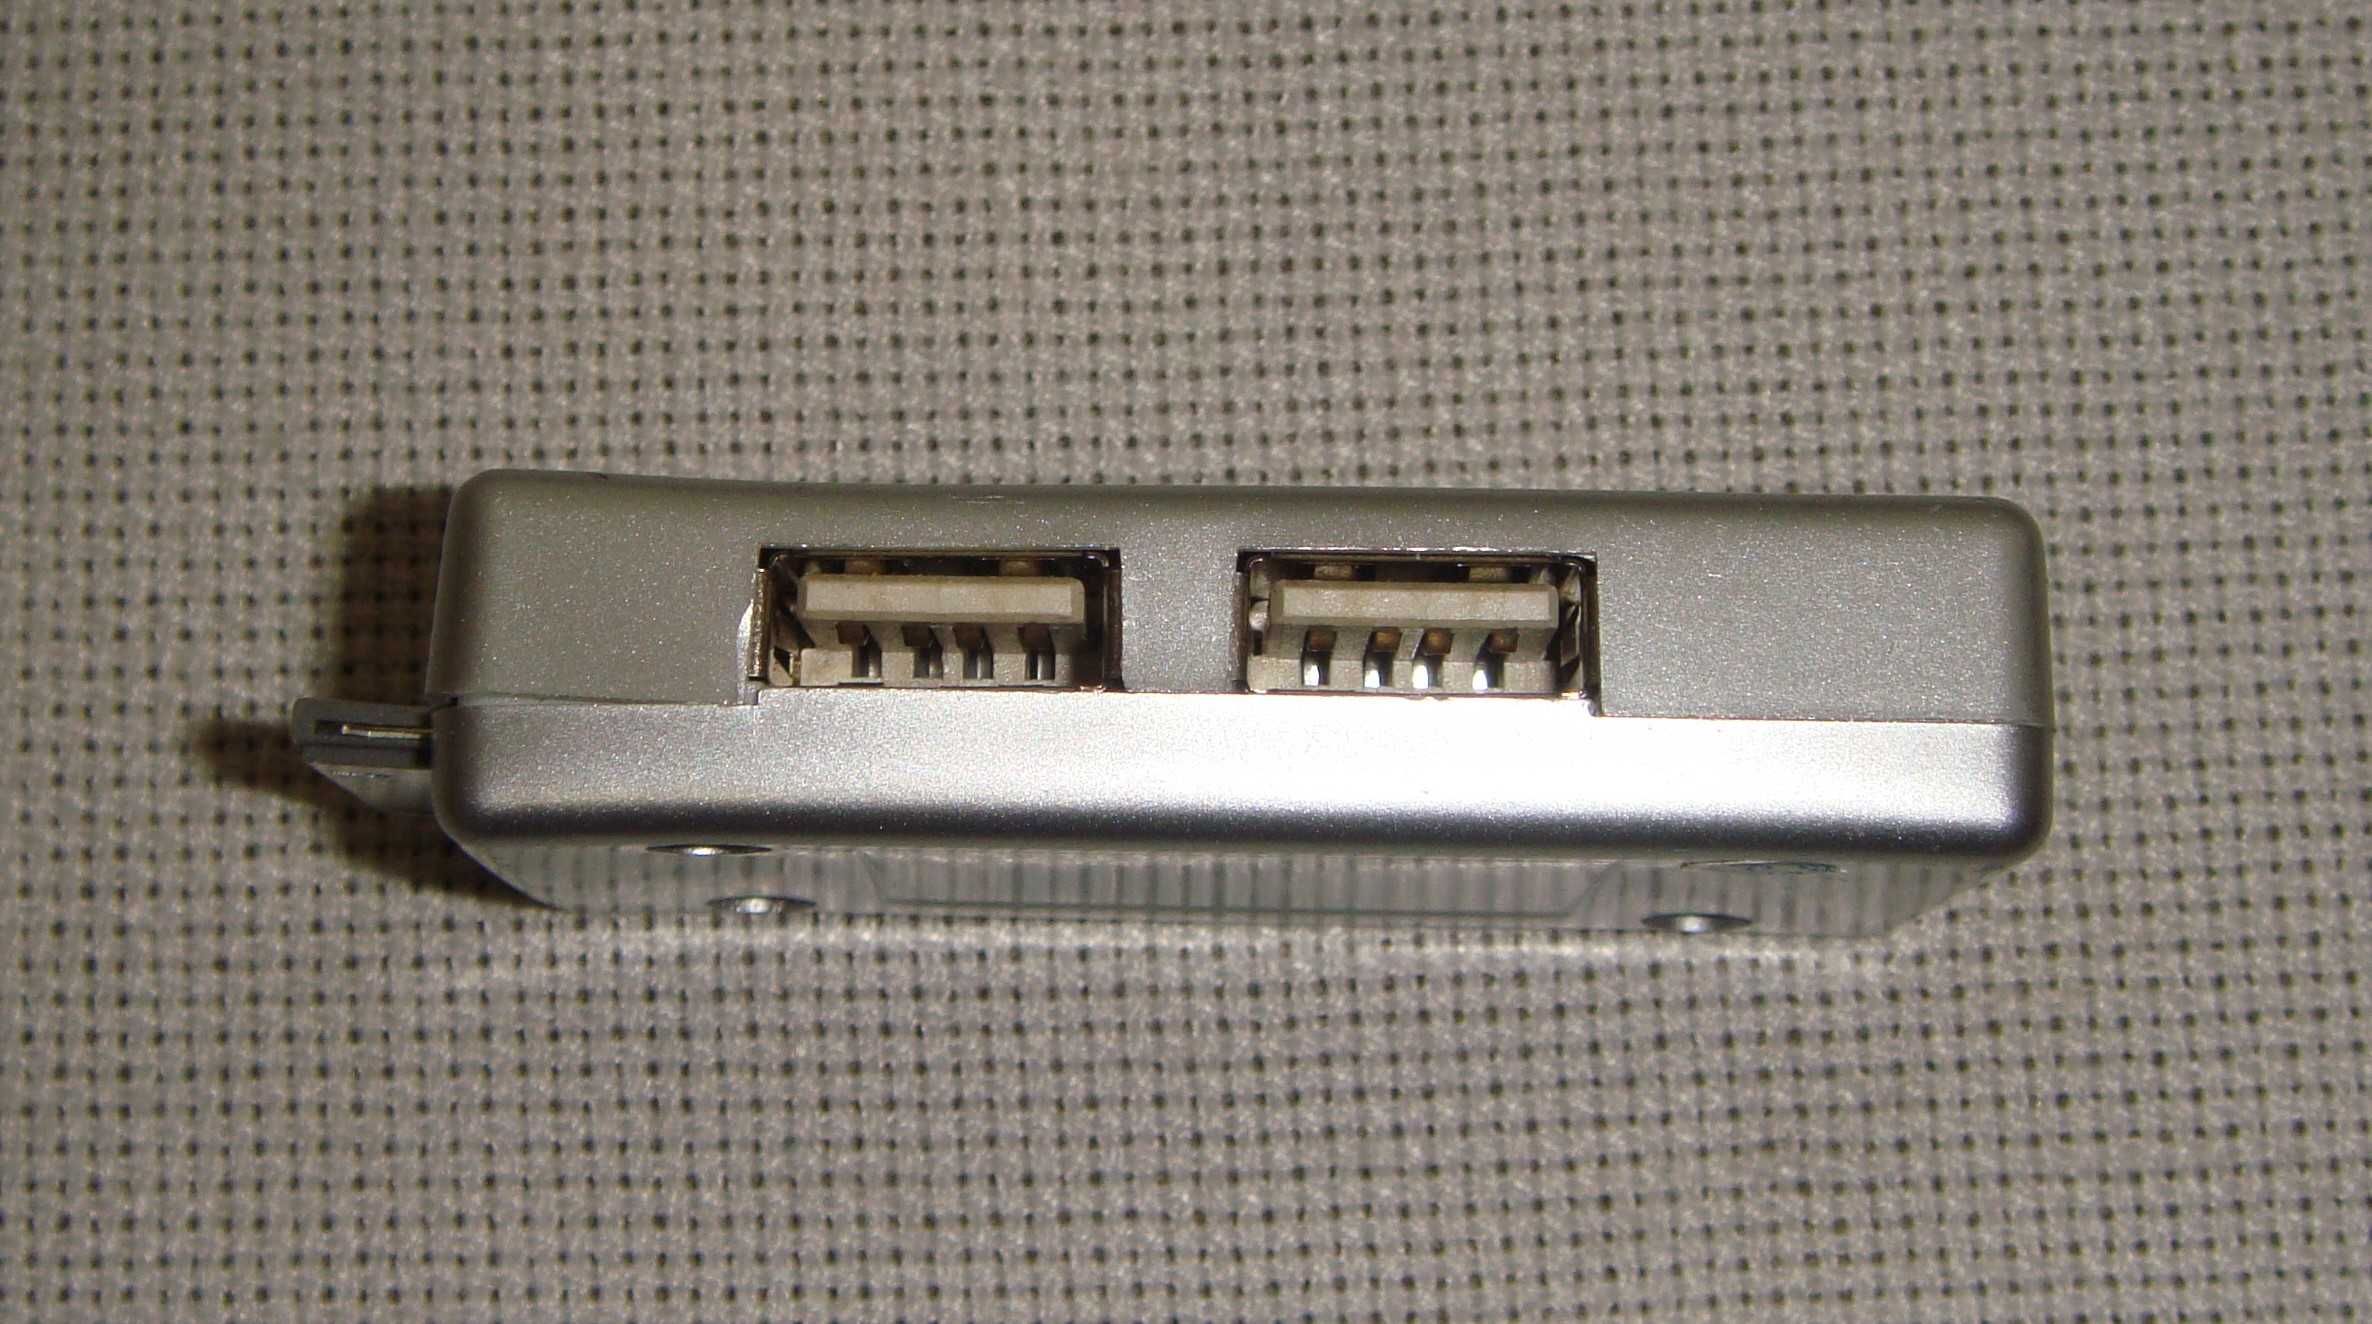 Адаптер ЮСБ переходник USB - Lightning Apple 30-pin - LAN Ethernet